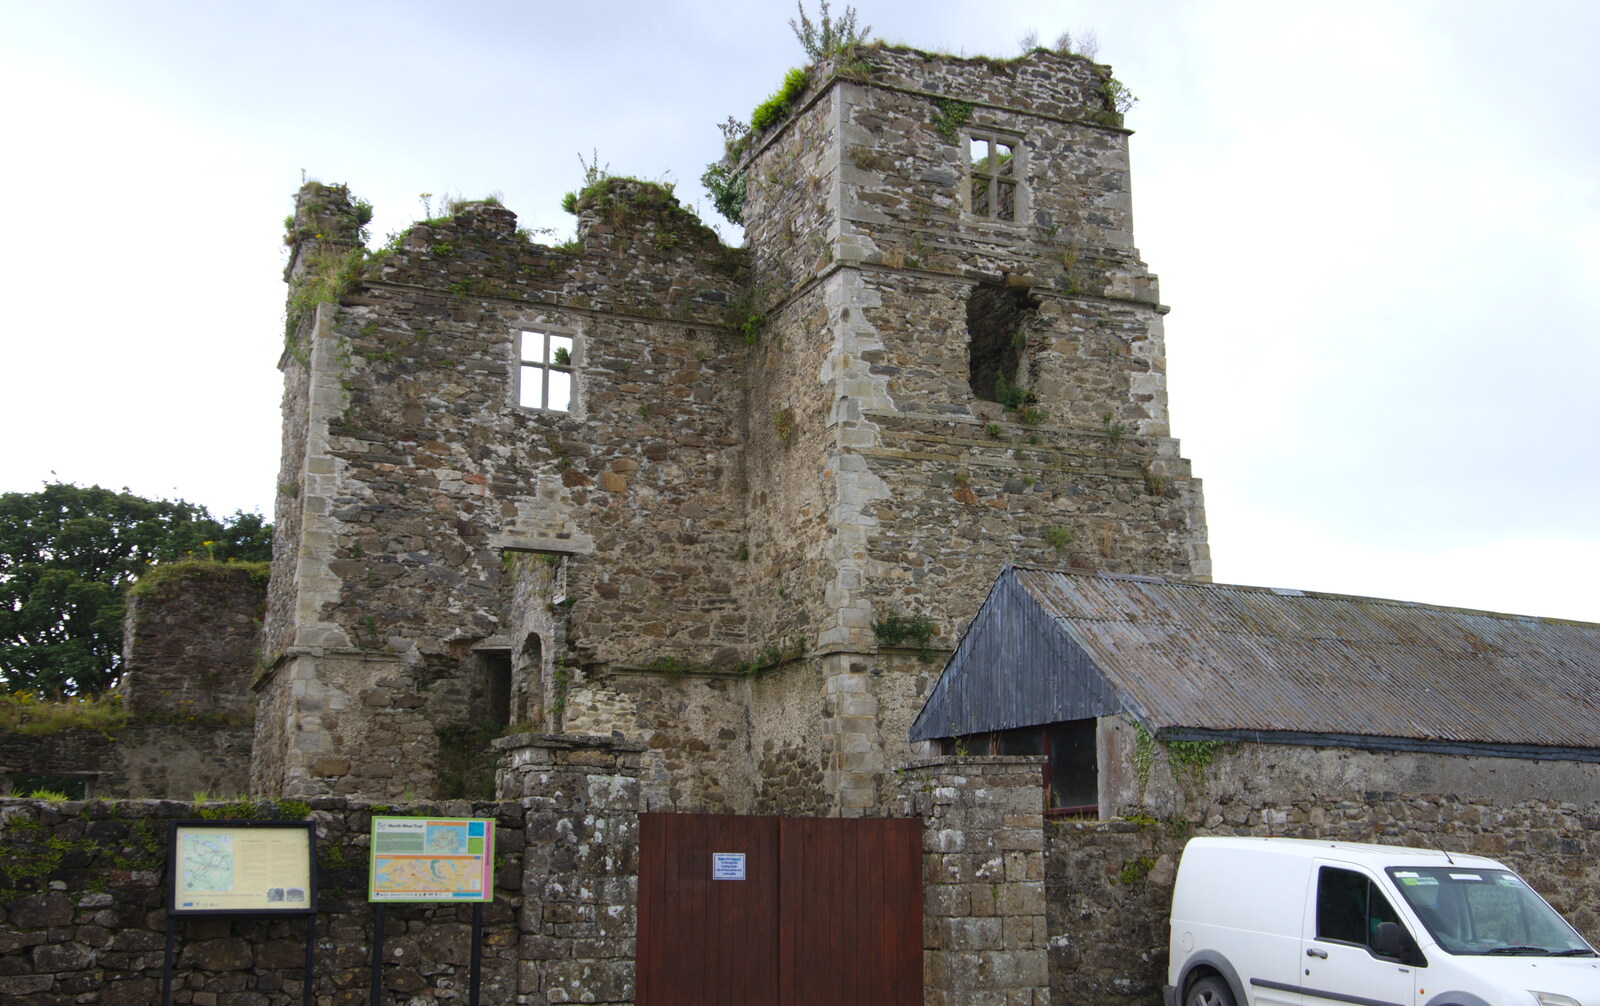 The castle, on Sráid an Chaistleáin from Open Mic Night, Bía Sláinte, Manorhamilton, Ireland - 17th August 2019